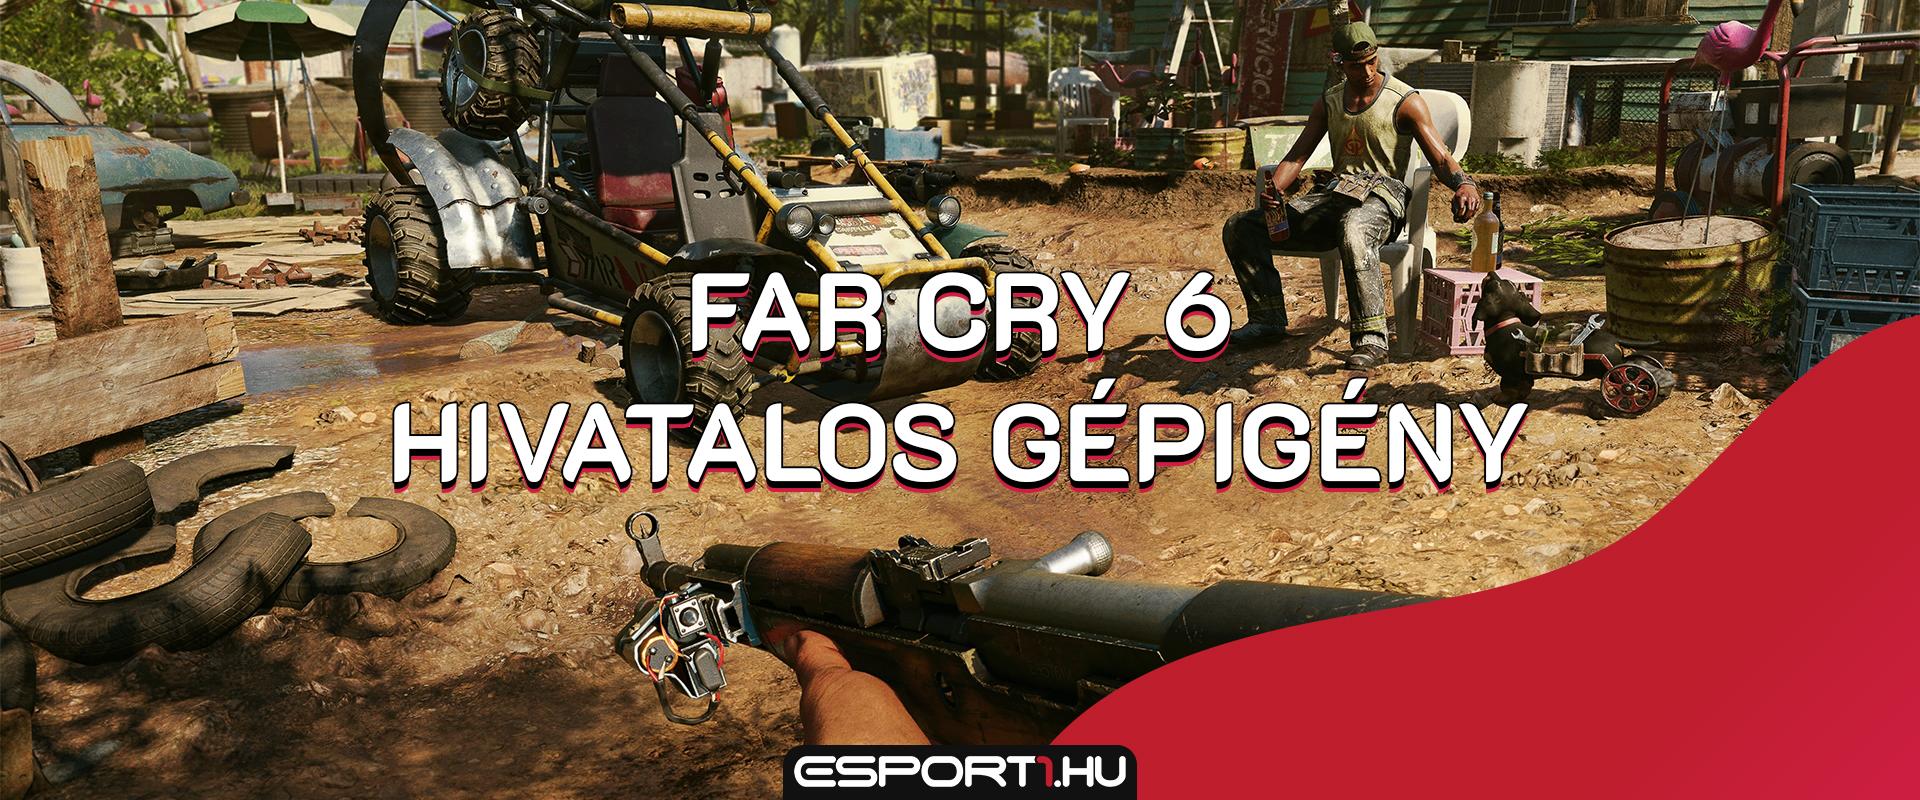 Gaming: Itt van a Far Cry 6 hivatalos gépigénye